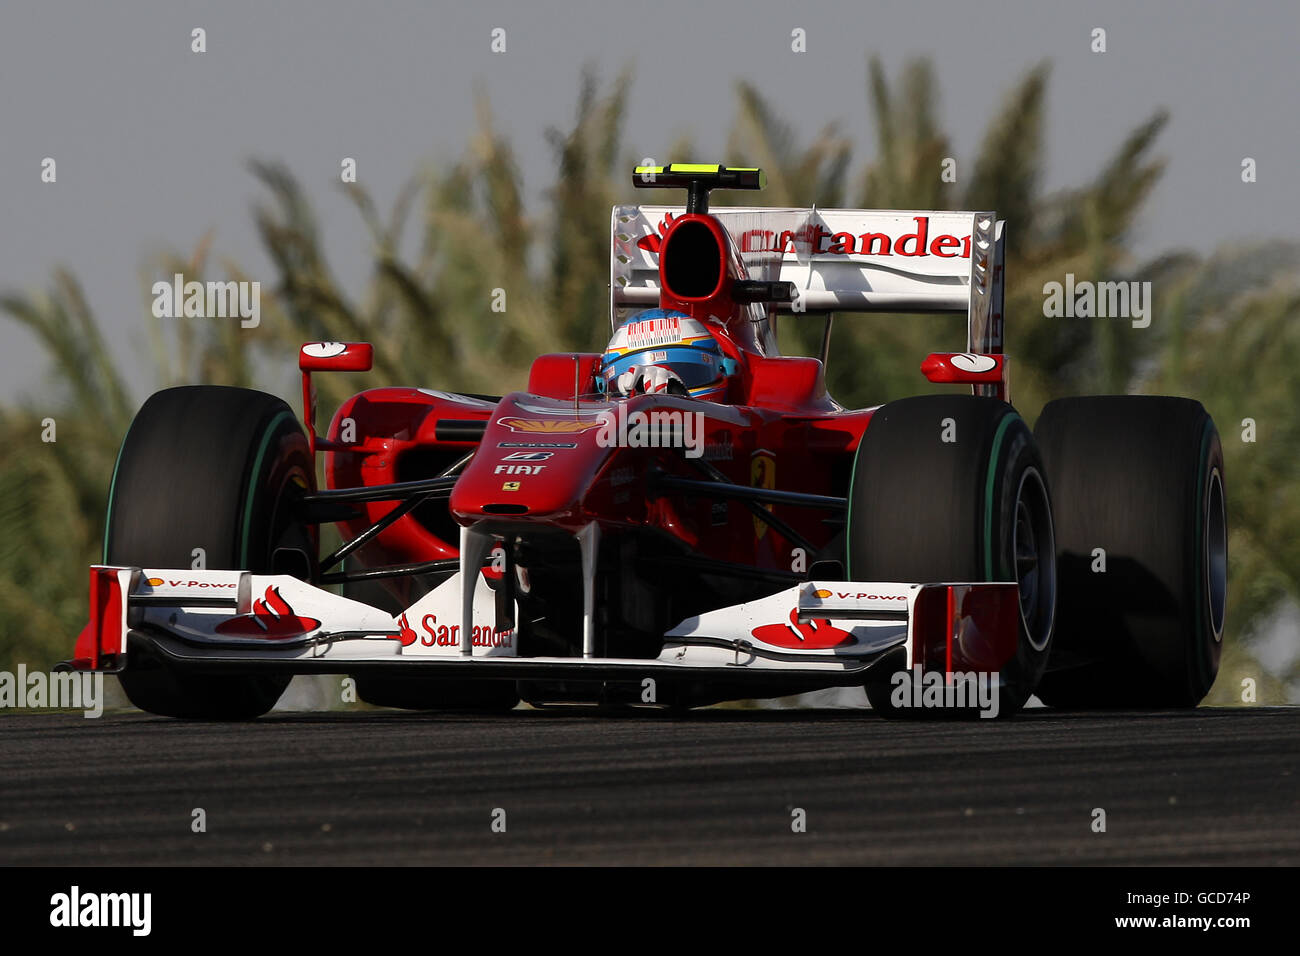 Ferarri's Fernando Alonso during the Gulf Air Bahrain Grand Prix at the Bahrain International Circuit in Sakhir, Bahrain Stock Photo